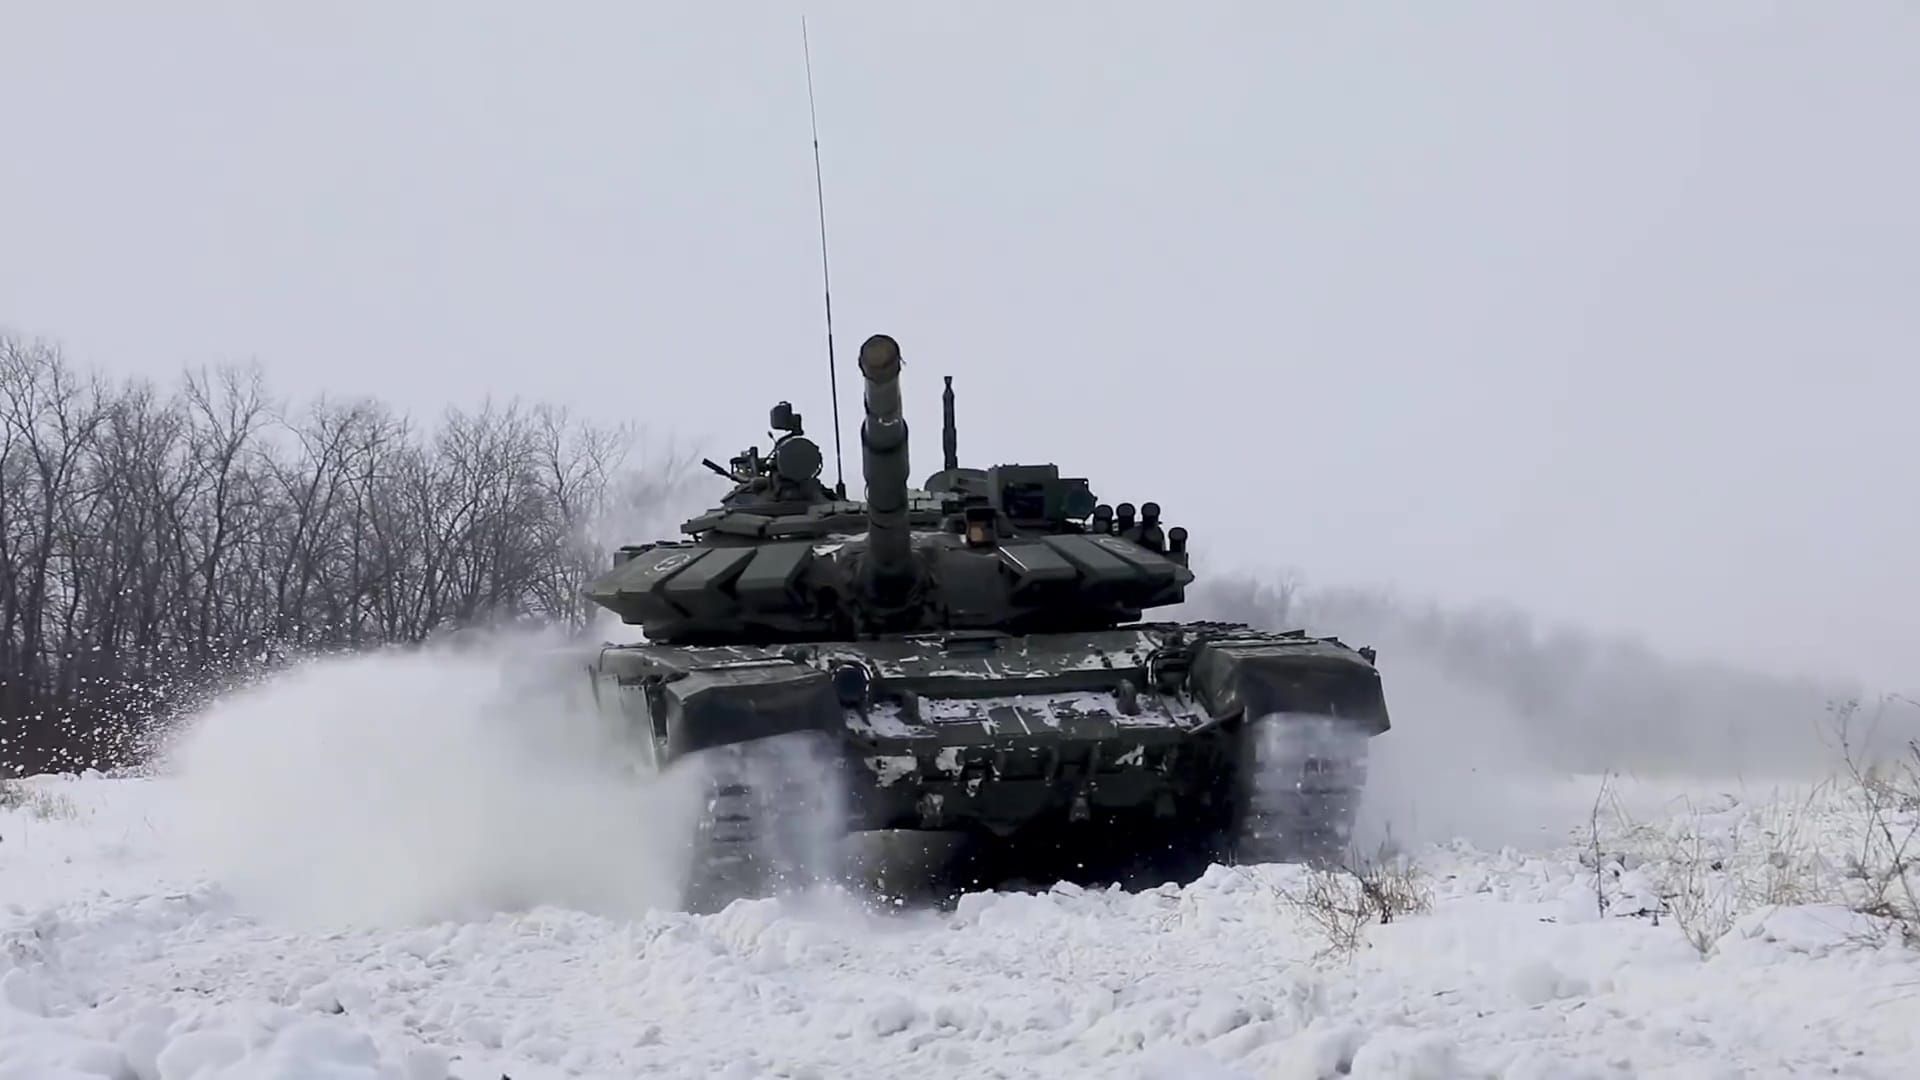 Russian tank on drills